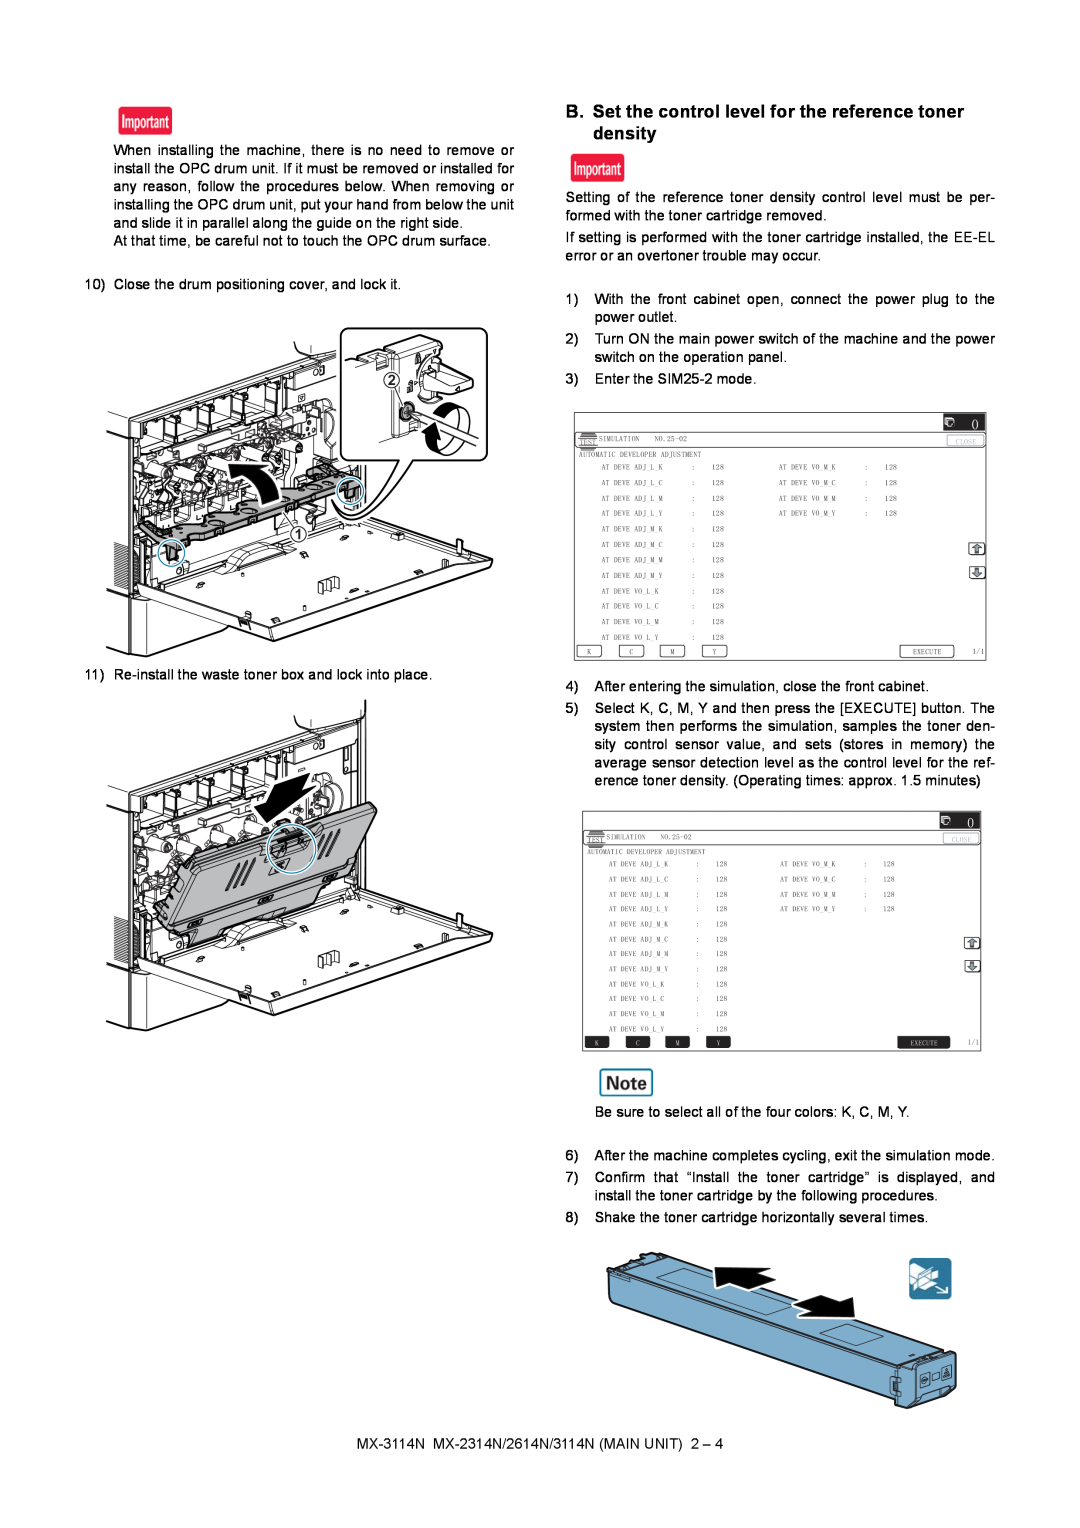 Sharp MX-2314N, MX-2614N, MX-3114N installation manual B. Set the control level for the reference toner density, ǂǂǂ ǂǂ 